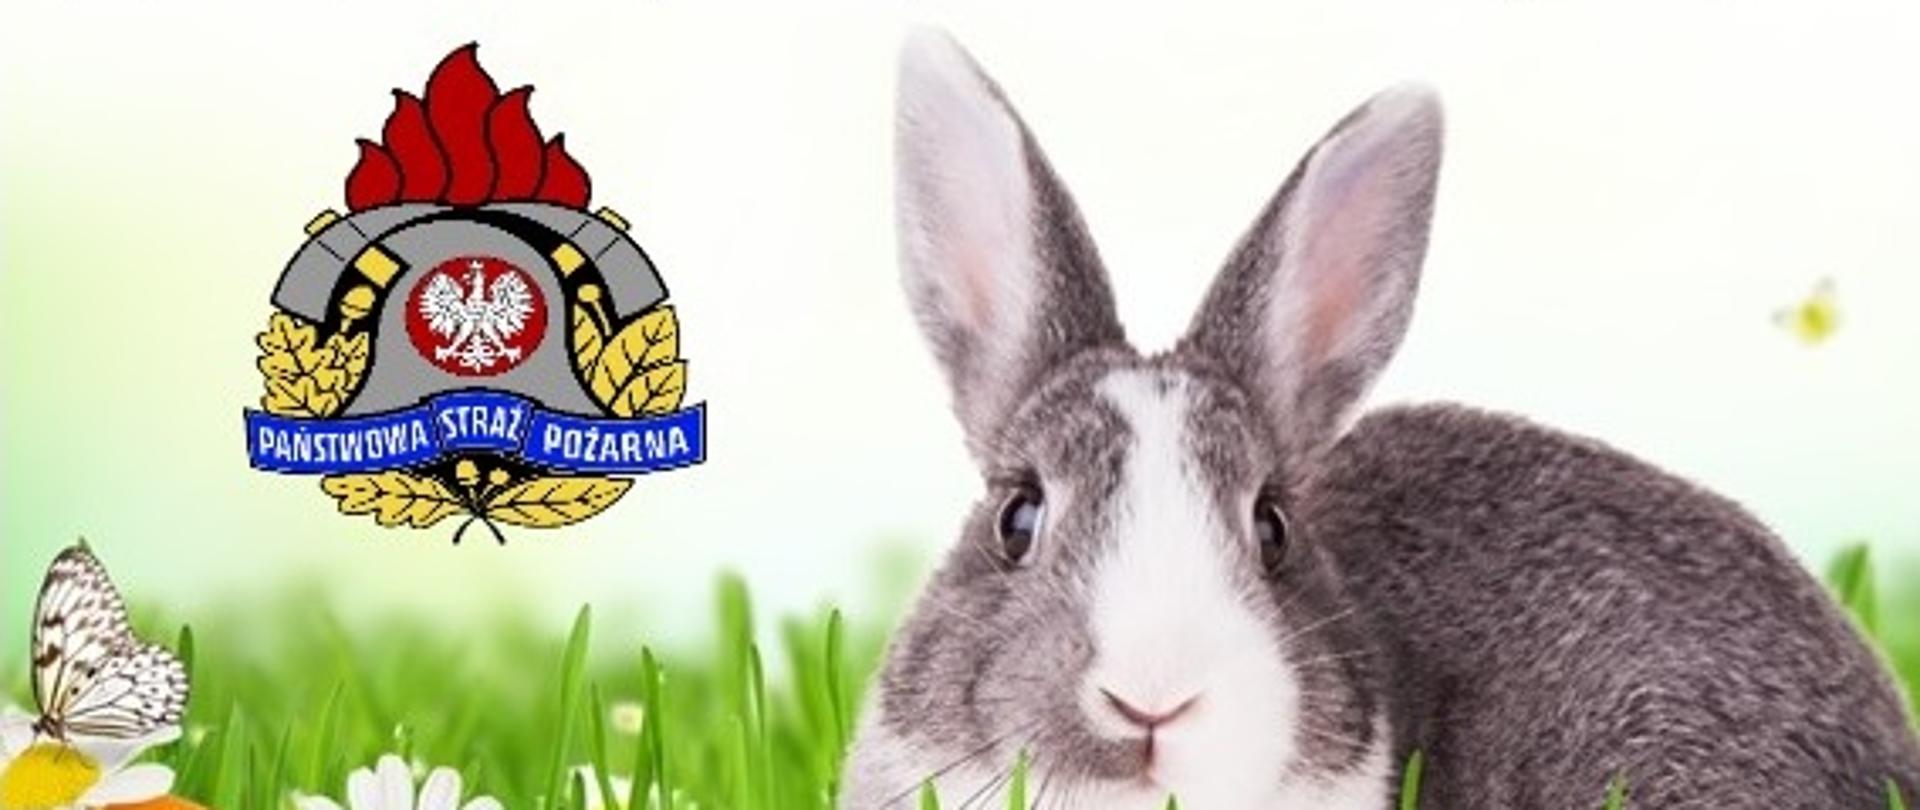 Zdjęcie przedstawia życzenia komendanta powiatowego z okazji Świąt Wielkanocnych, na dole królik na trawie, cztery pisanki i logo państwowej straży pożarnej